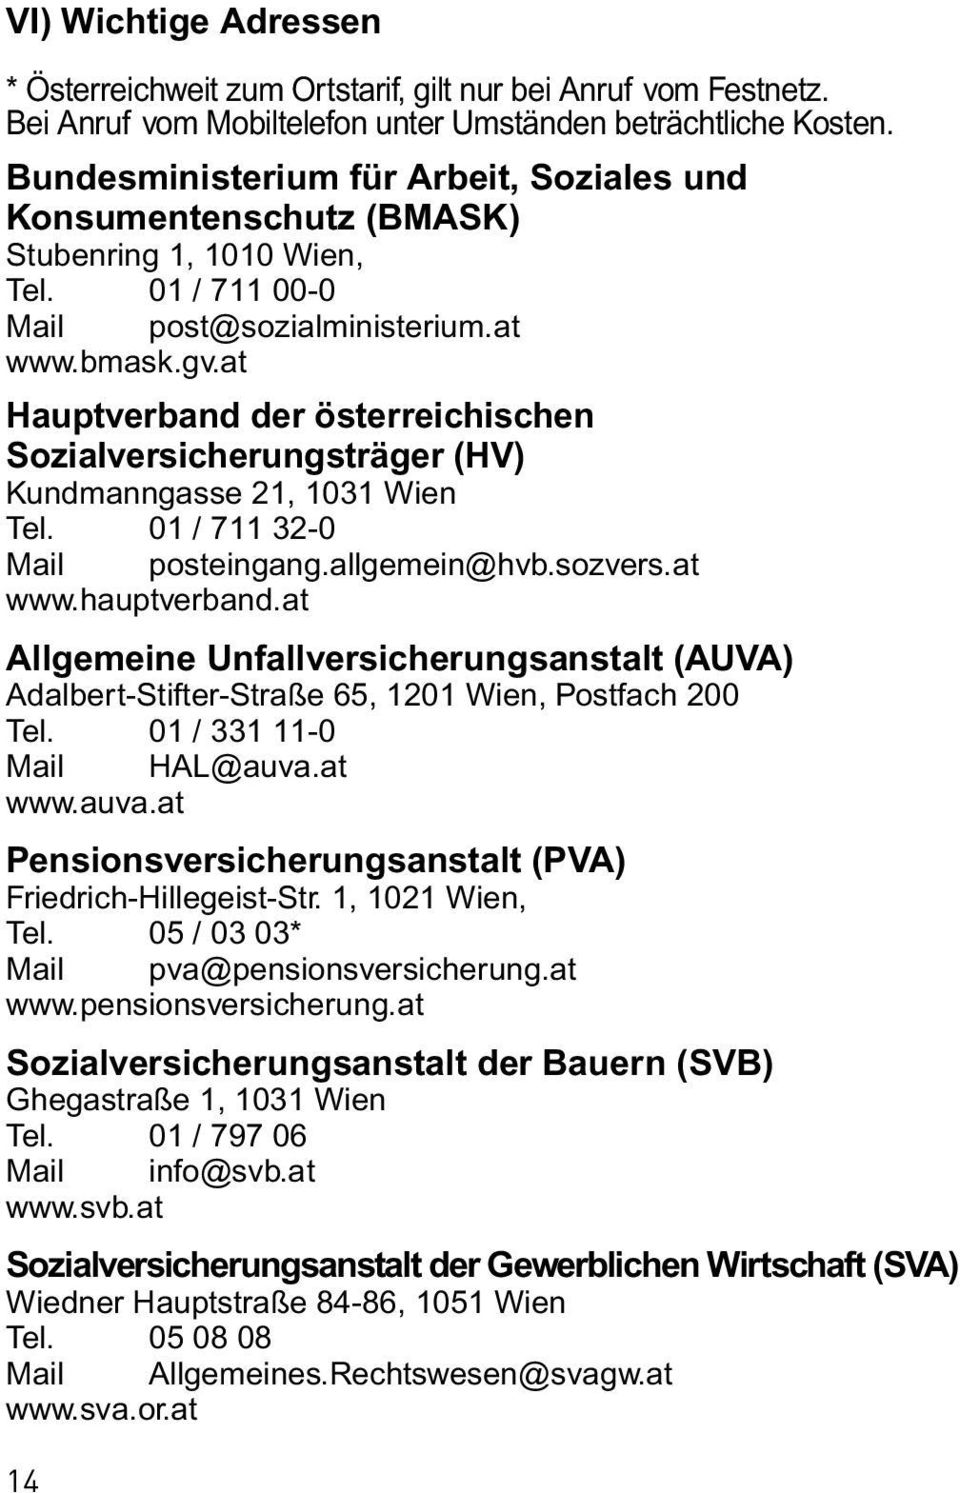 at Hauptverband der österreichischen Sozialversicherungsträger (HV) Kundmanngasse 21, 1031 Wien Tel. 01 / 711 32-0 Mail posteingang.allgemein@hvb.sozvers.at www.hauptverband.